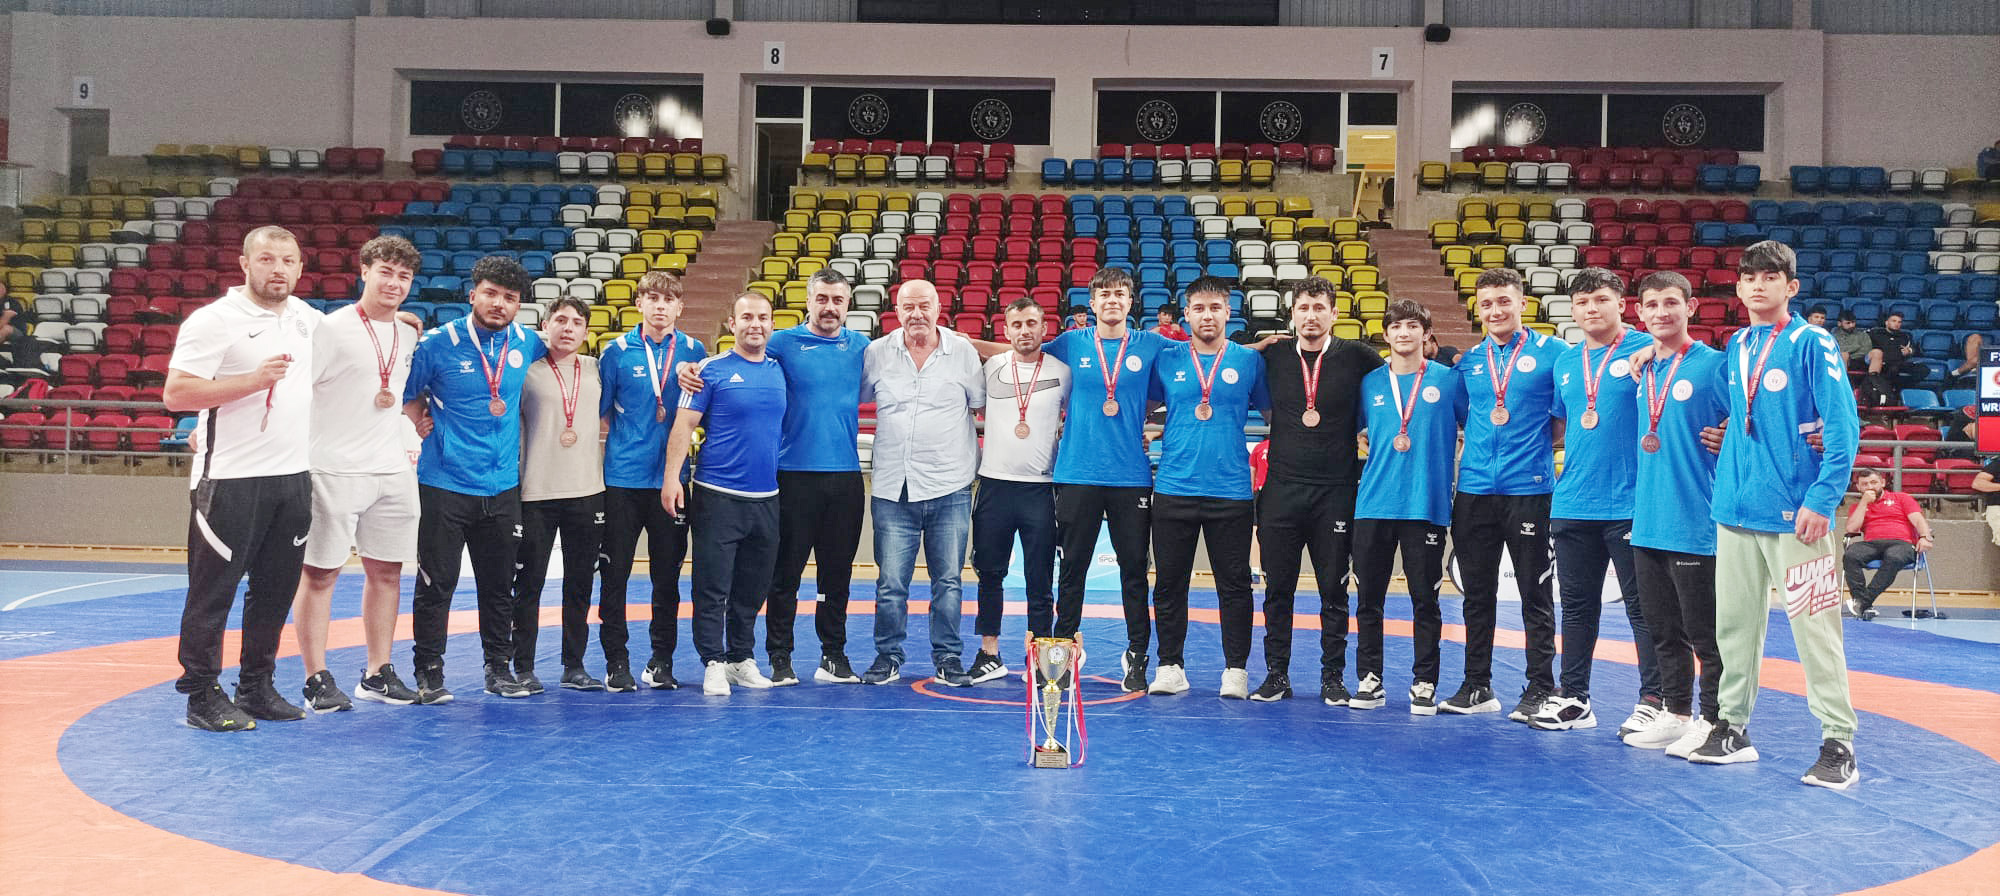 Yozgat Ata Spor Kulubü Türkiye üçüncüsü oldu